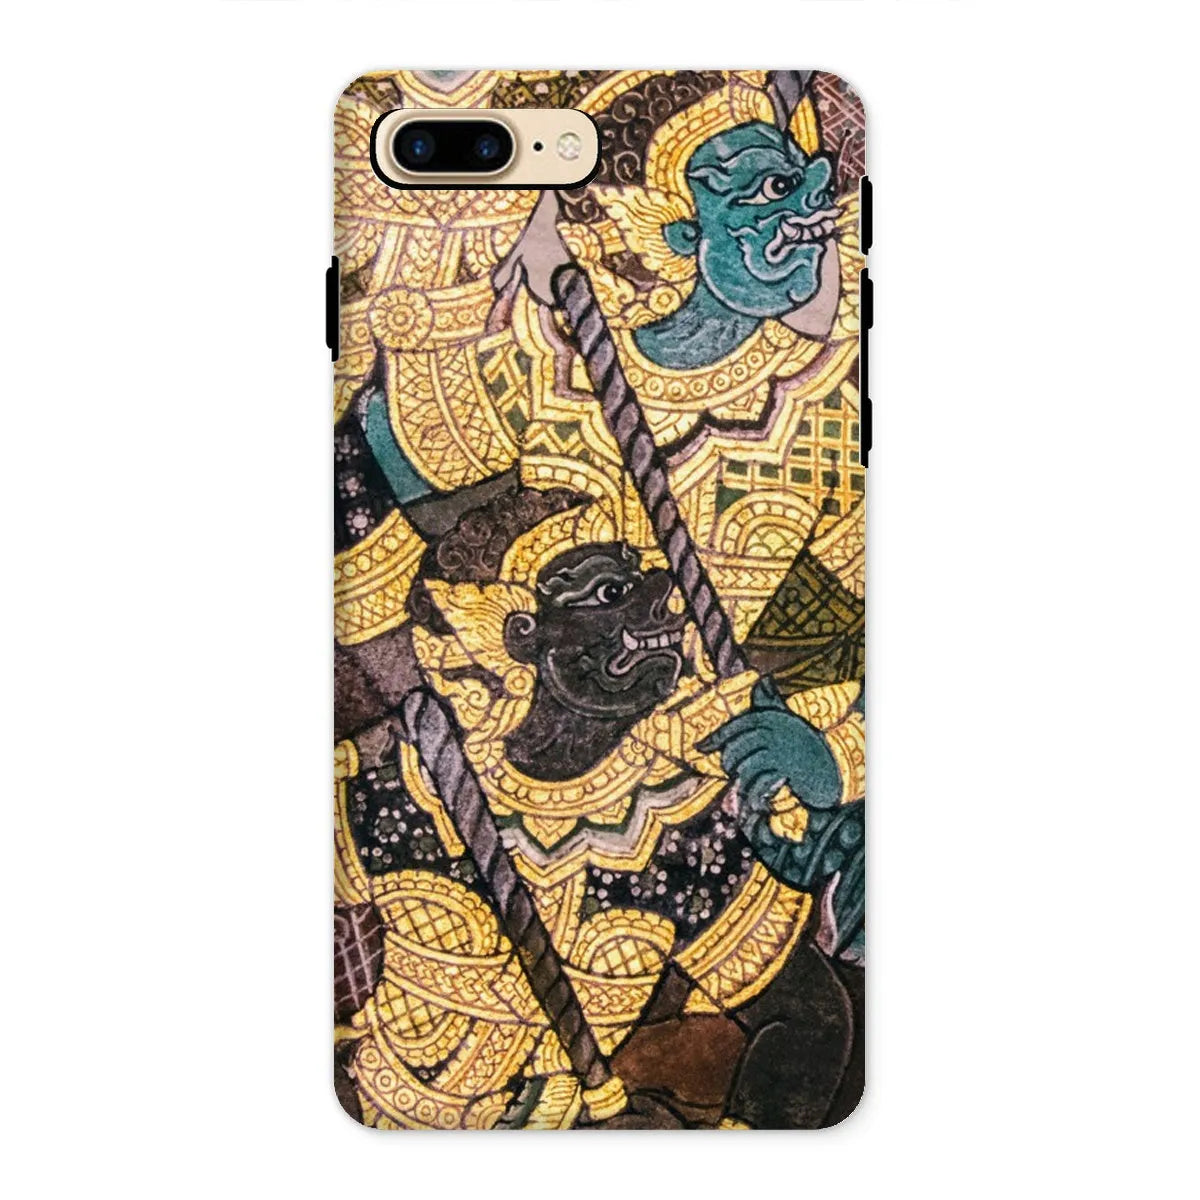 Action Men - Ancient Thai Temple Art Phone Case - Iphone 8 Plus / Matte - Mobile Phone Cases - Aesthetic Art